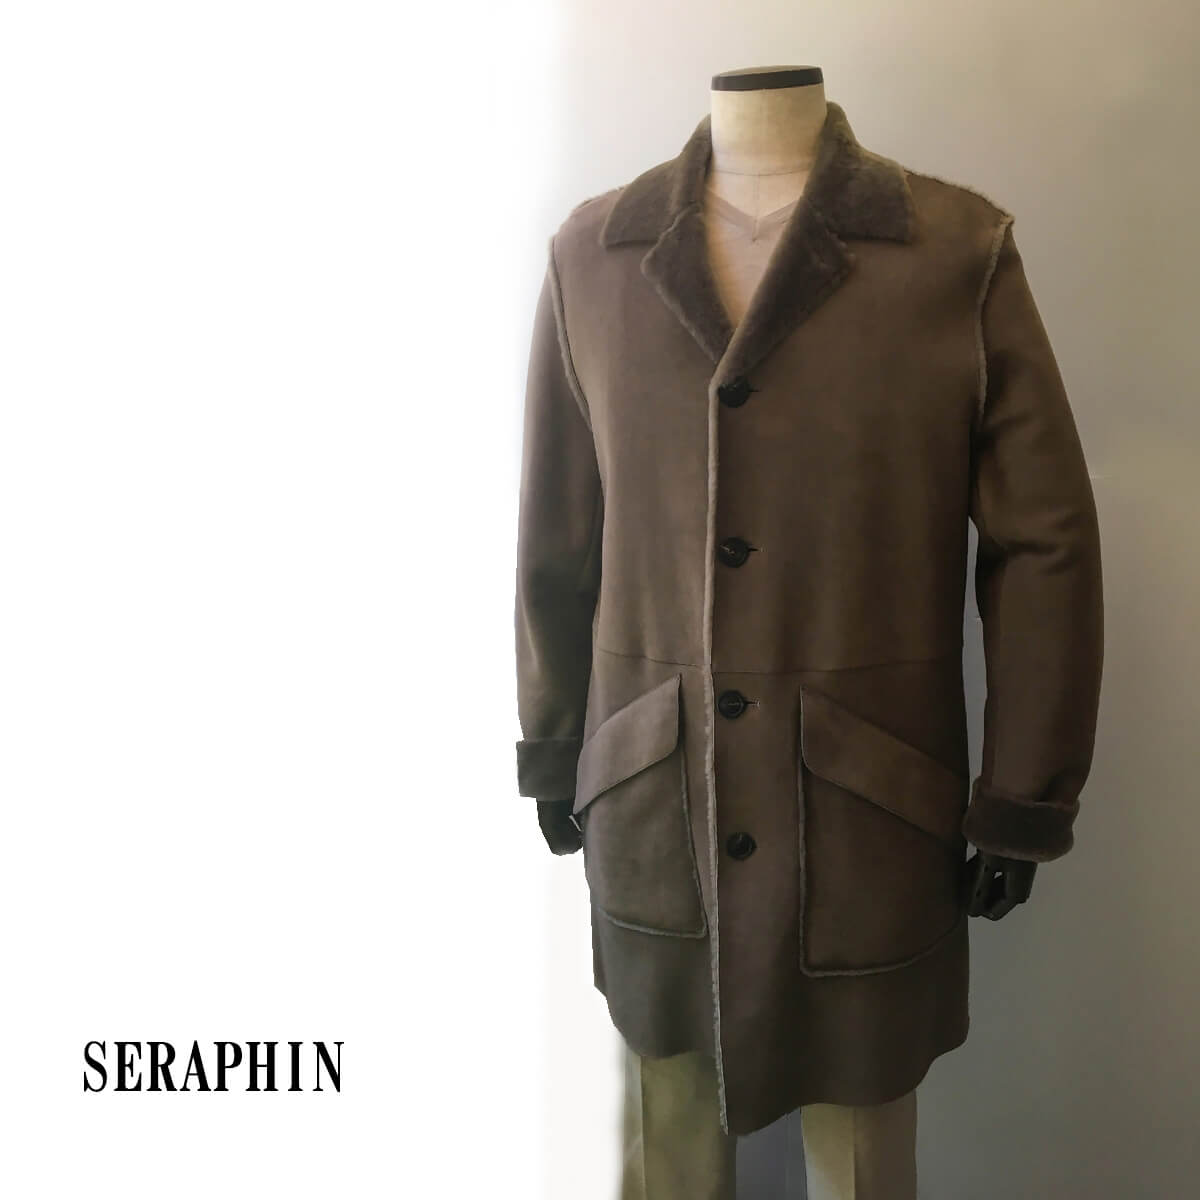 SERAPHIN (セラファン)コート メンズ カジュアル ムートンコート 本革 ブランド ロングコート おしゃれ